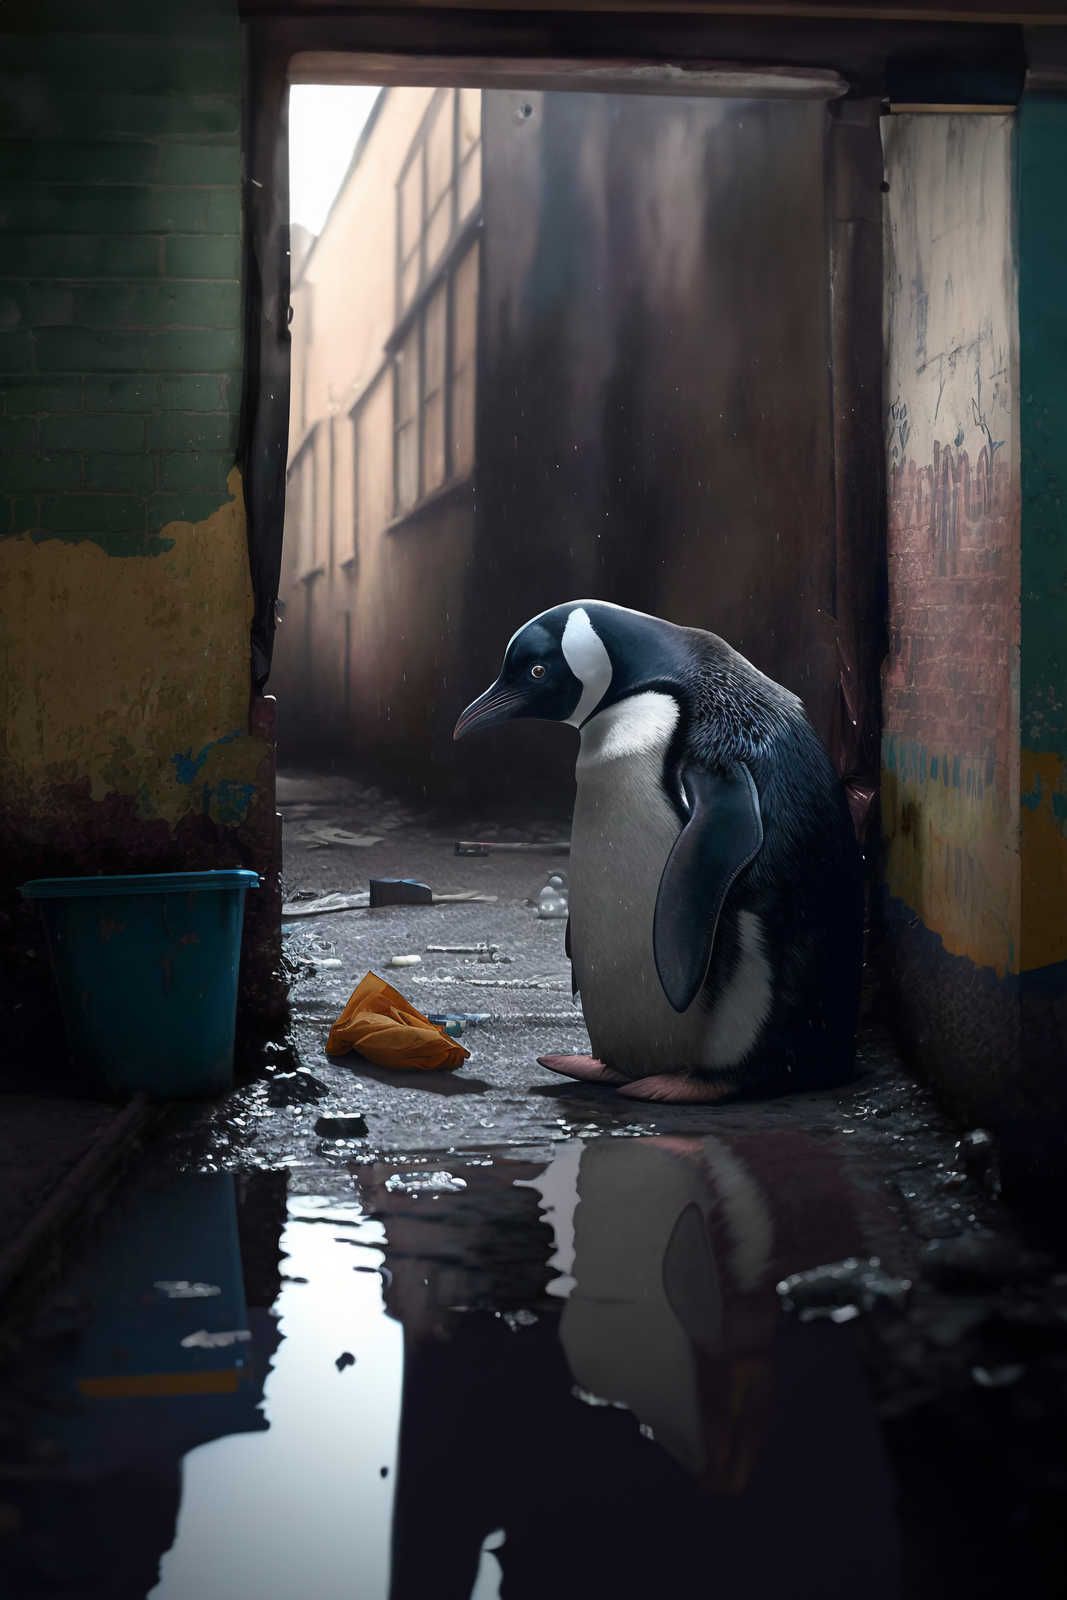             KI Cuadro »pingüino perdido« - 60 cm x 90 cm
        